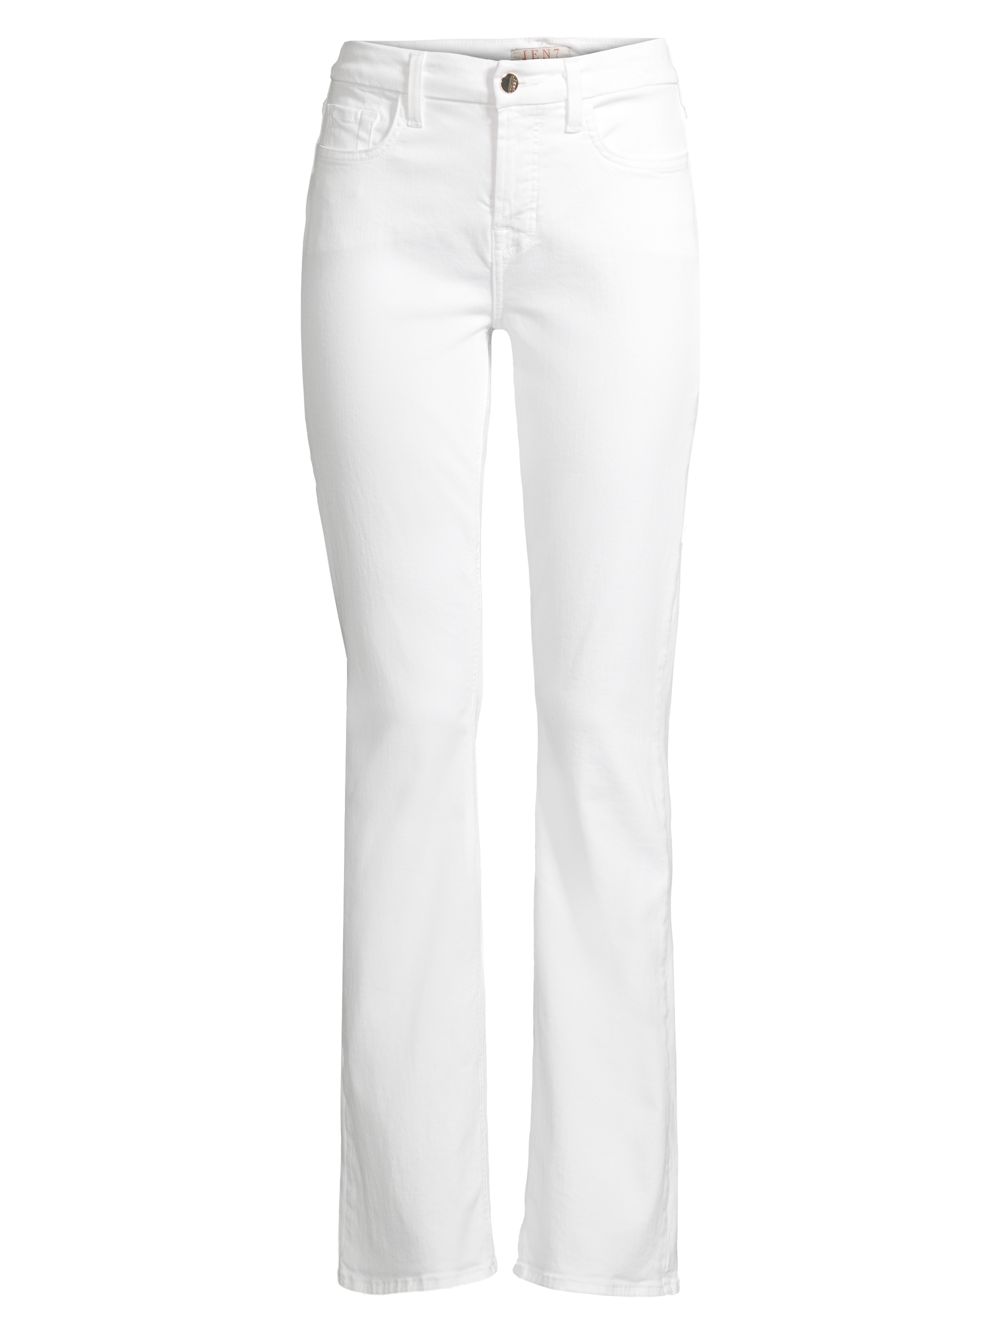 Узкие моделирующие джинсы Bootcut Jen7, белый